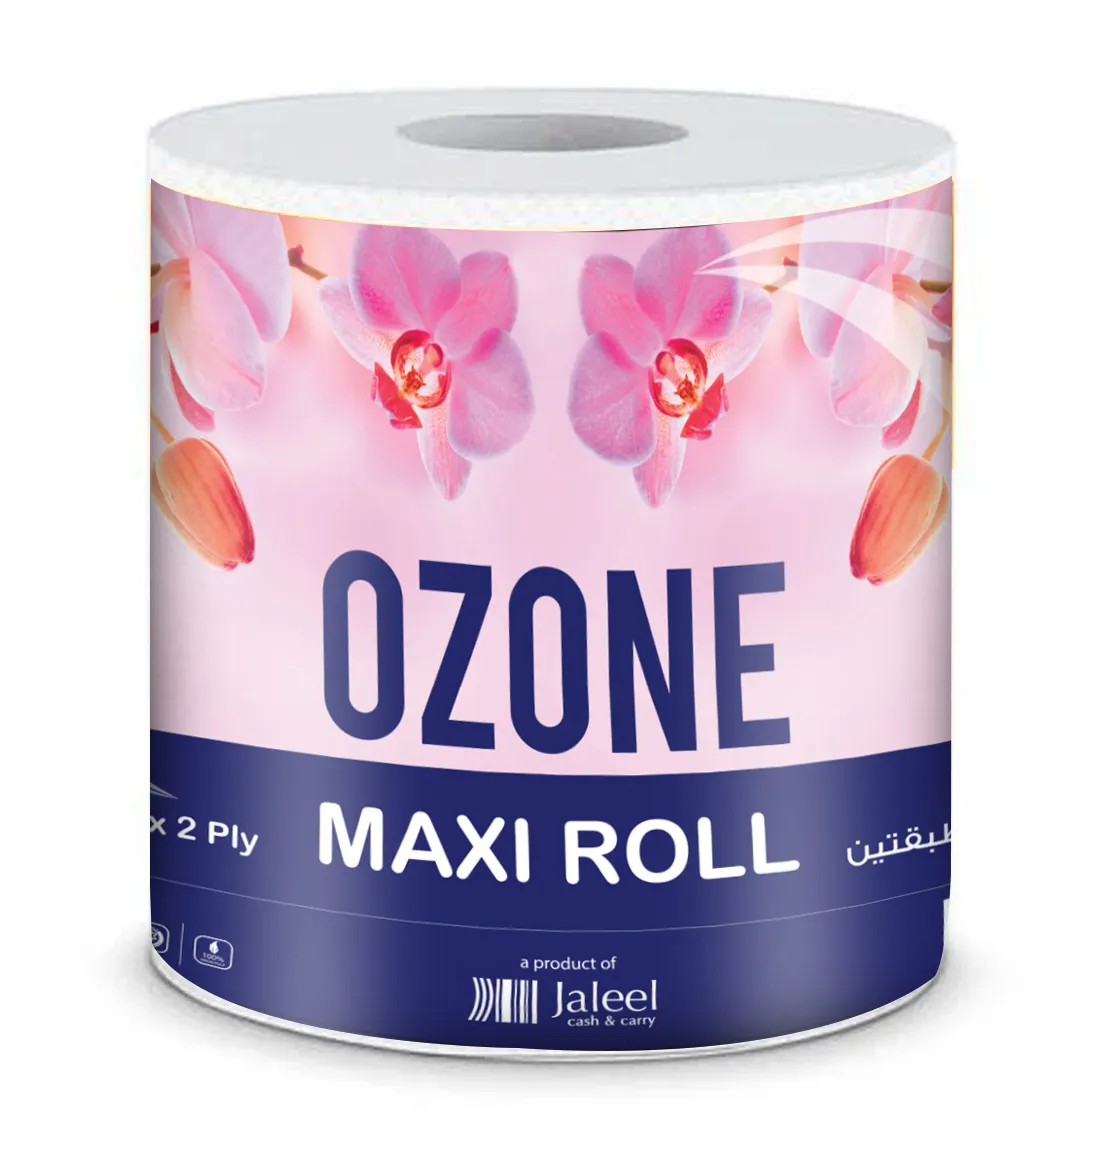 Ozone Maxi Roll, 150mtr x 2ply